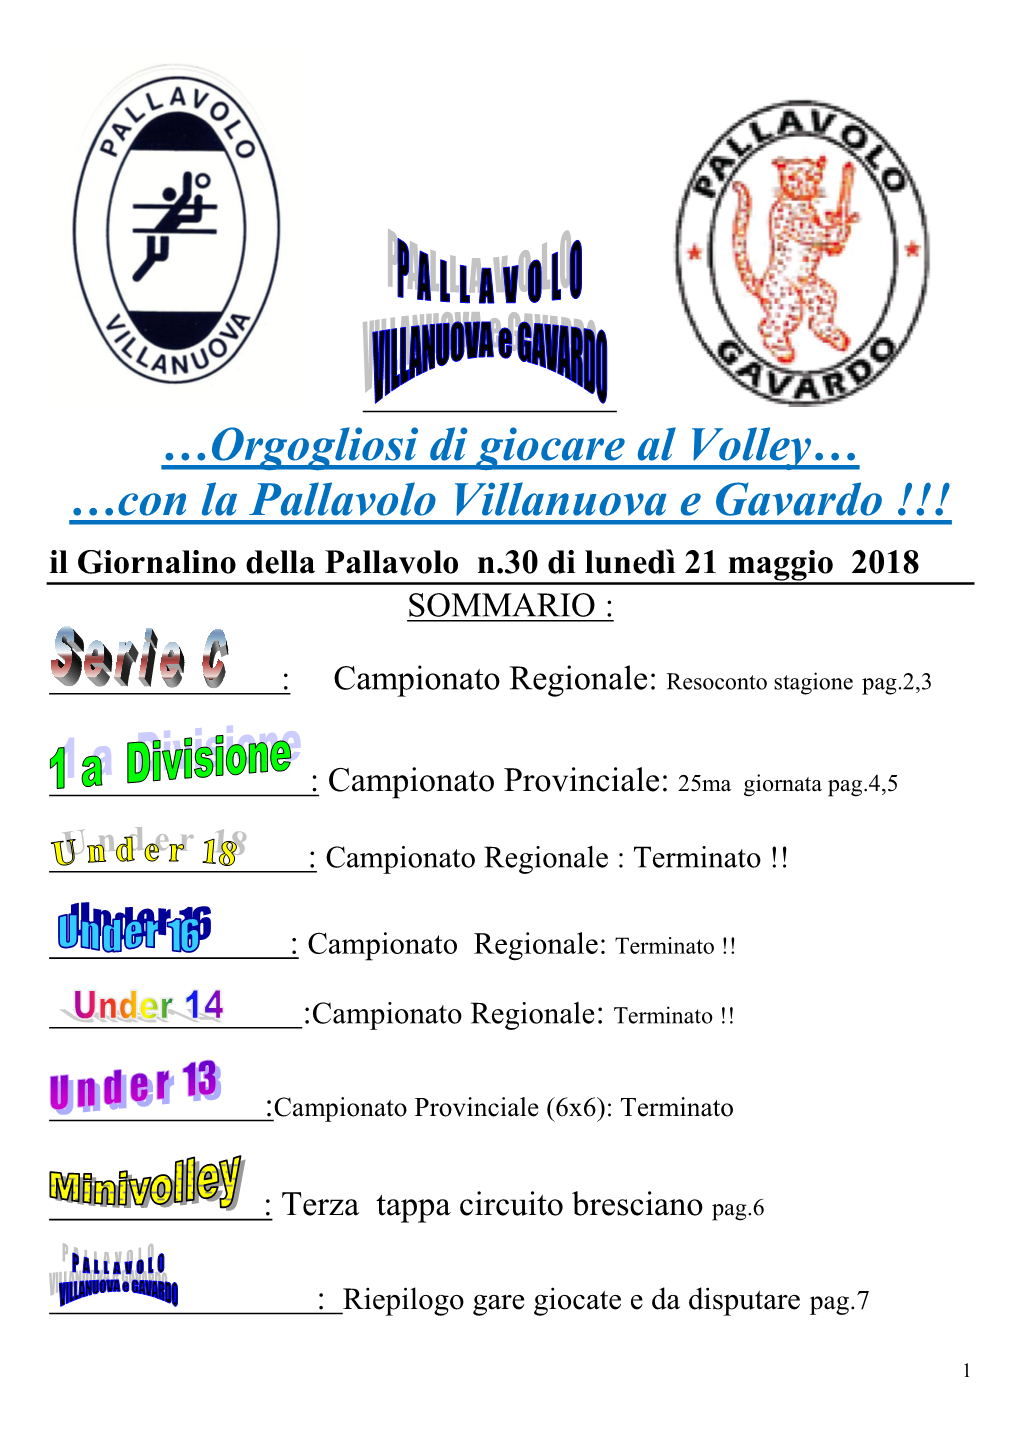 Campionato Regionale: Resoconto Stagione Pag.2,3